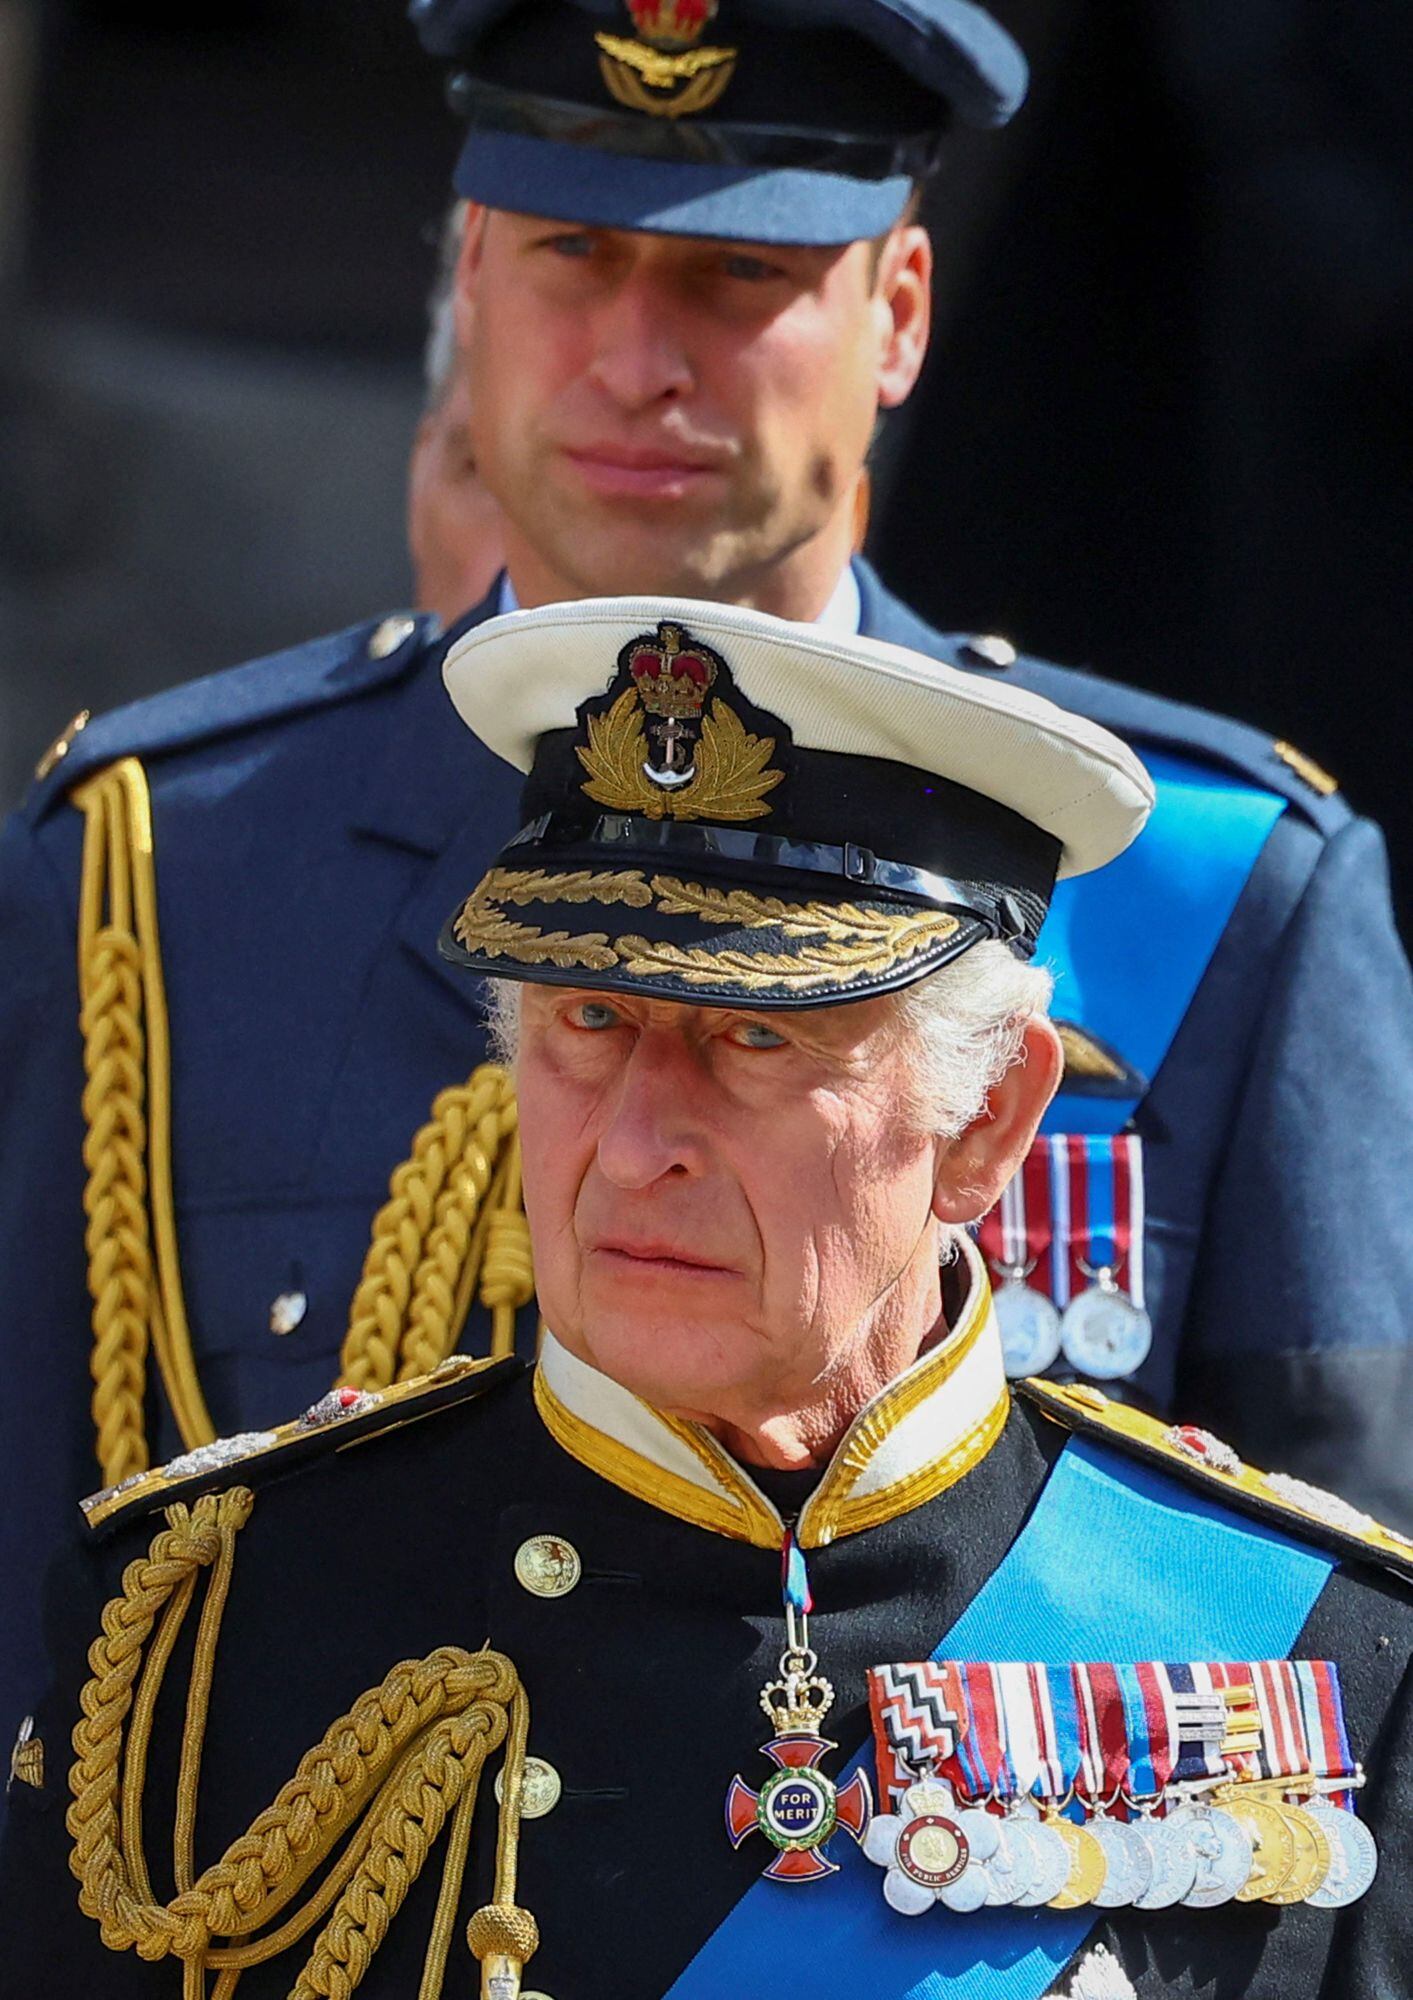 El rey británico Carlos III y Guillermo, príncipe de Gales, asisten al funeral de estado y al entierro de la reina Isabel de Inglaterra, en Londres